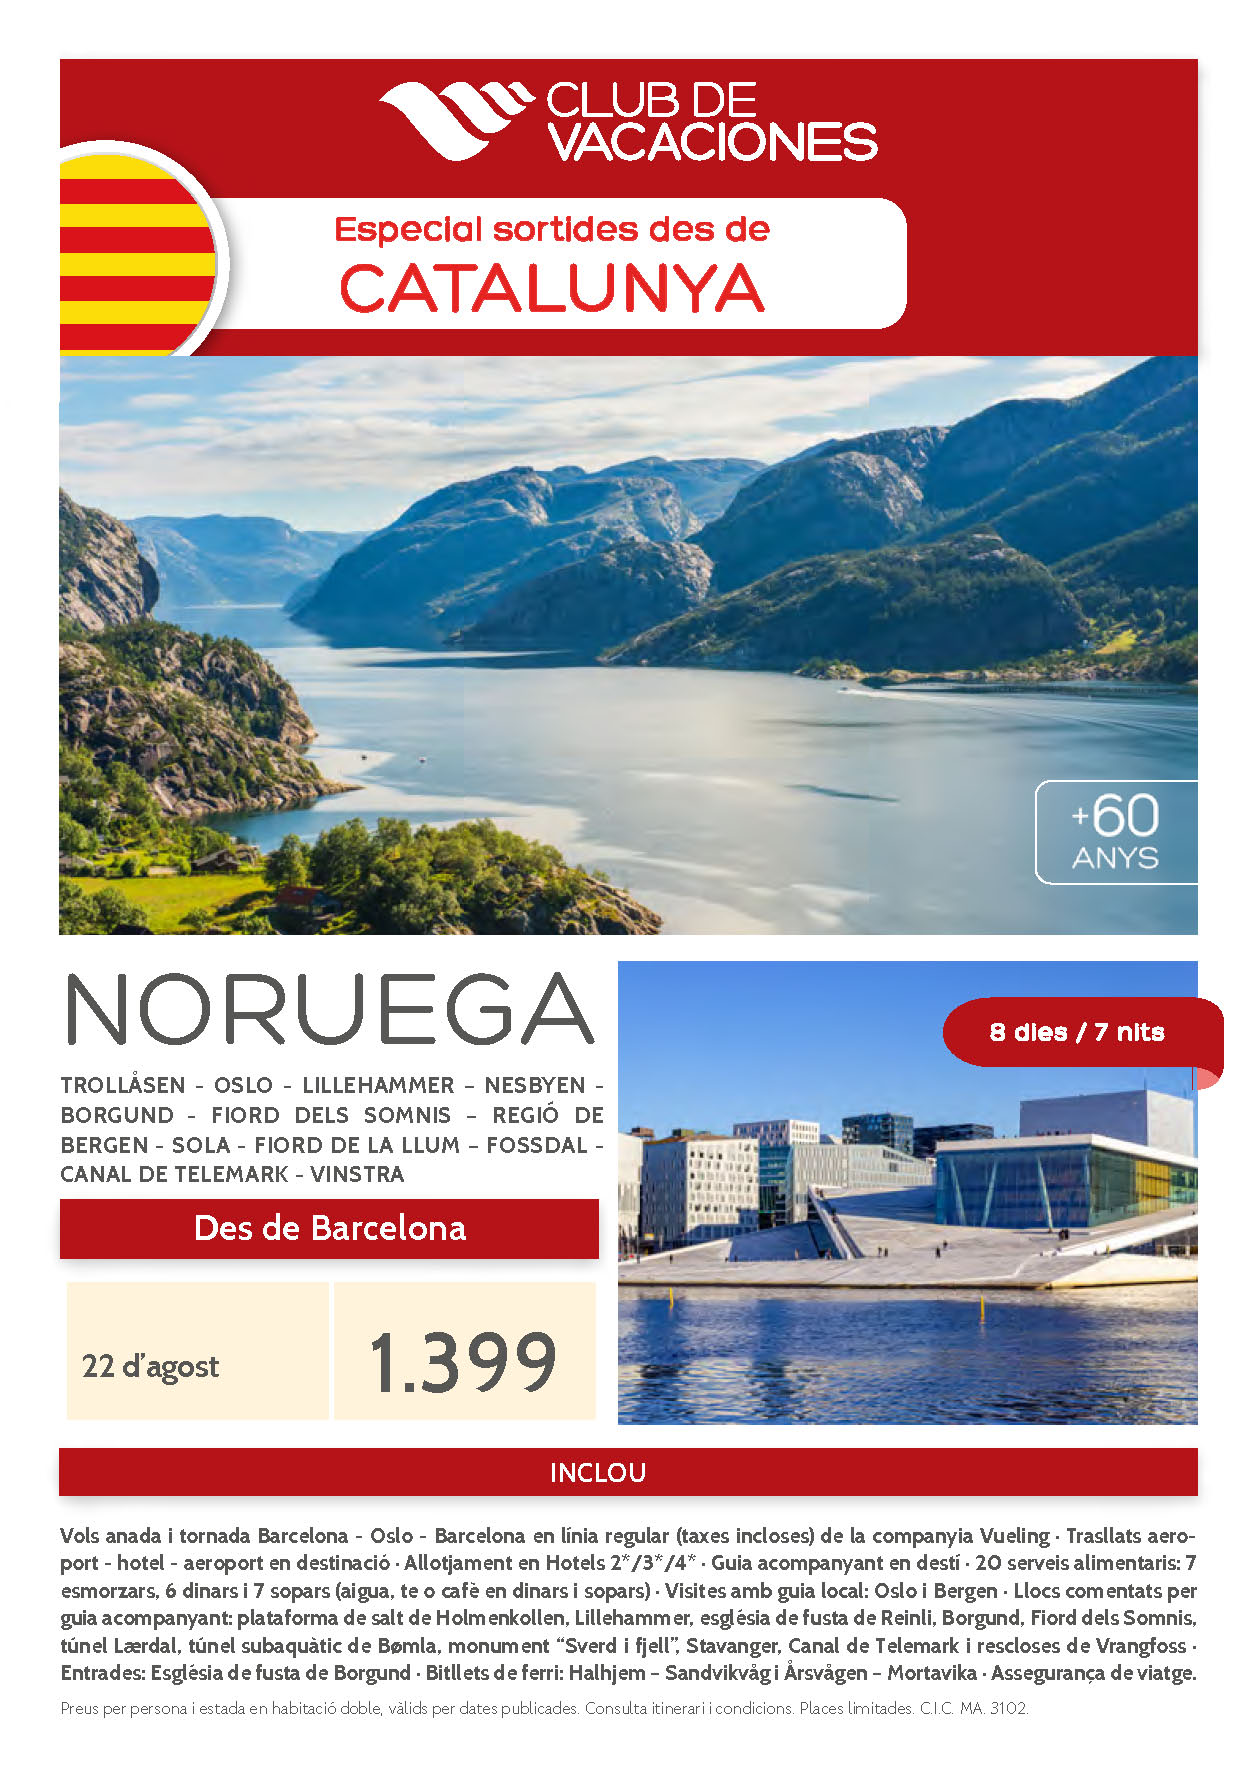 Oferta Club de Vacaciones Mayores de 60 Noruega y sus Fiordos Magicos salidas desde Barcelona 22 Agosto 2022 vuelos Vueling